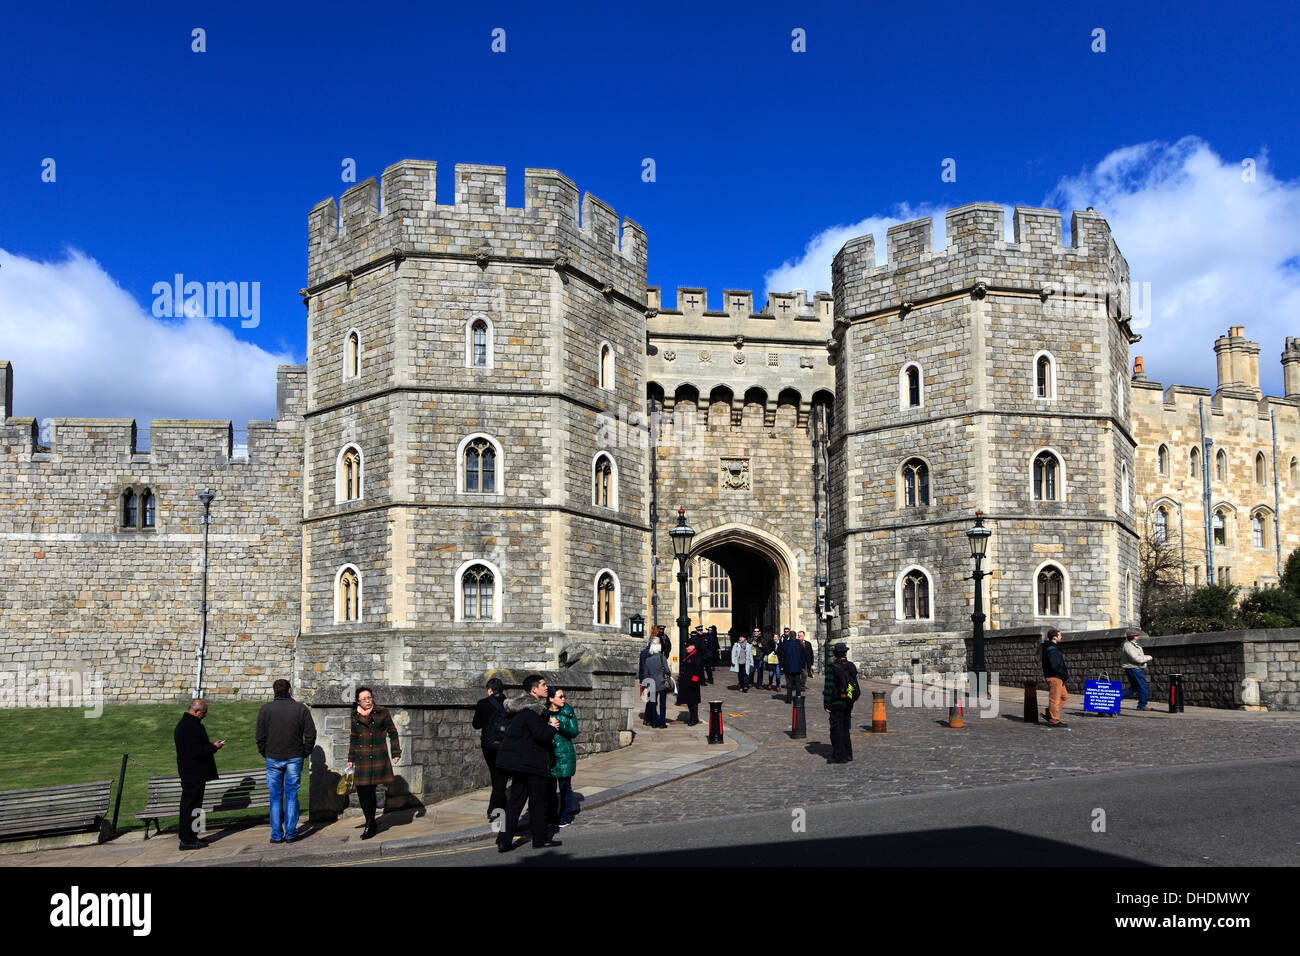 Vista exterior del castillo de Windsor, la ciudad de Windsor, condado de Berkshire, Inglaterra, Reino Unido. Foto de stock